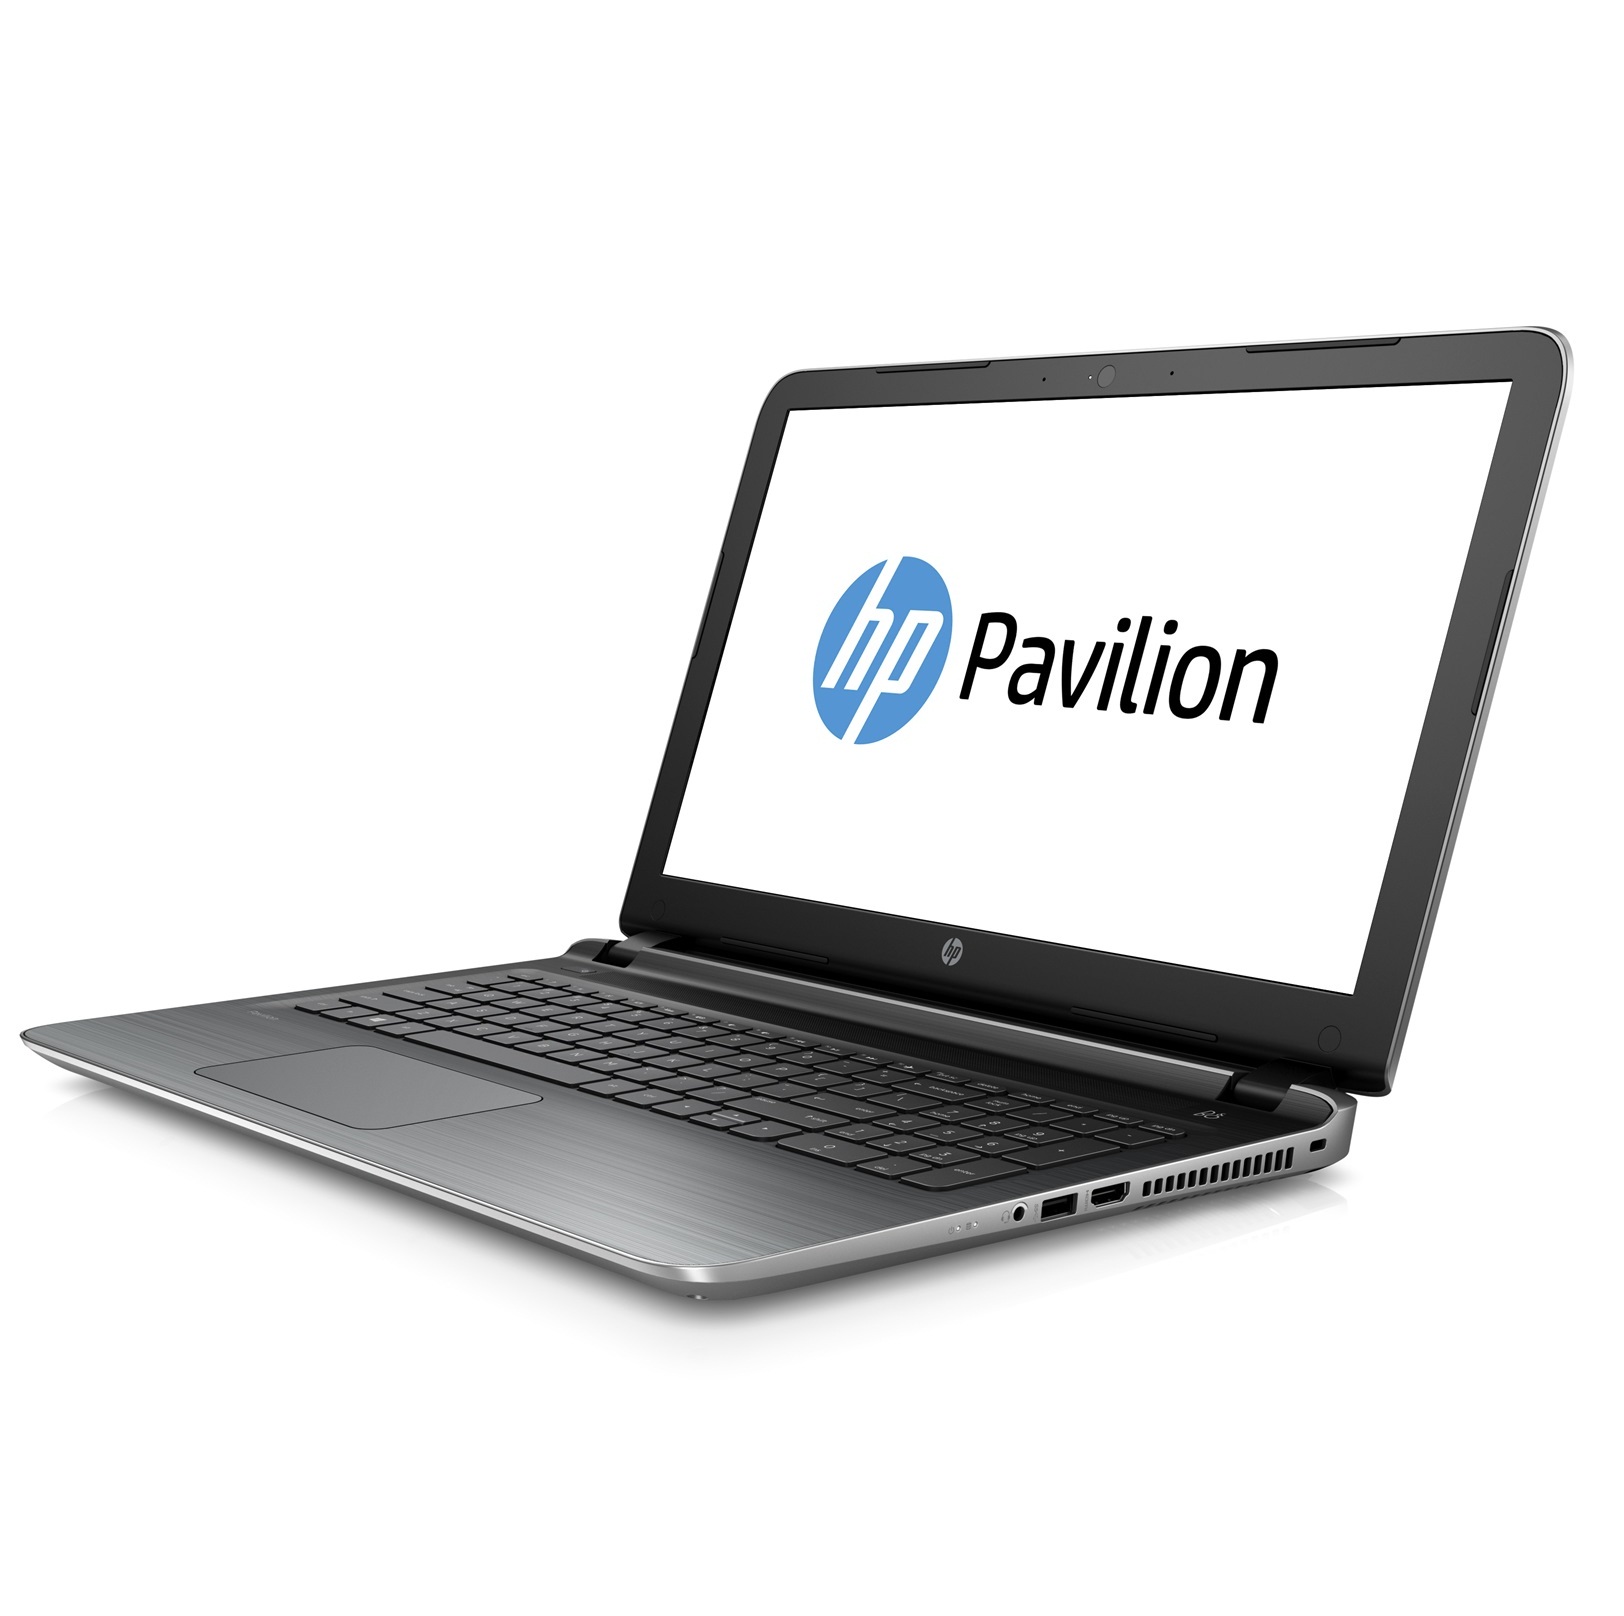 Laptop HP Core i5 Pavilion 15 ab221TU P3V34PA - White